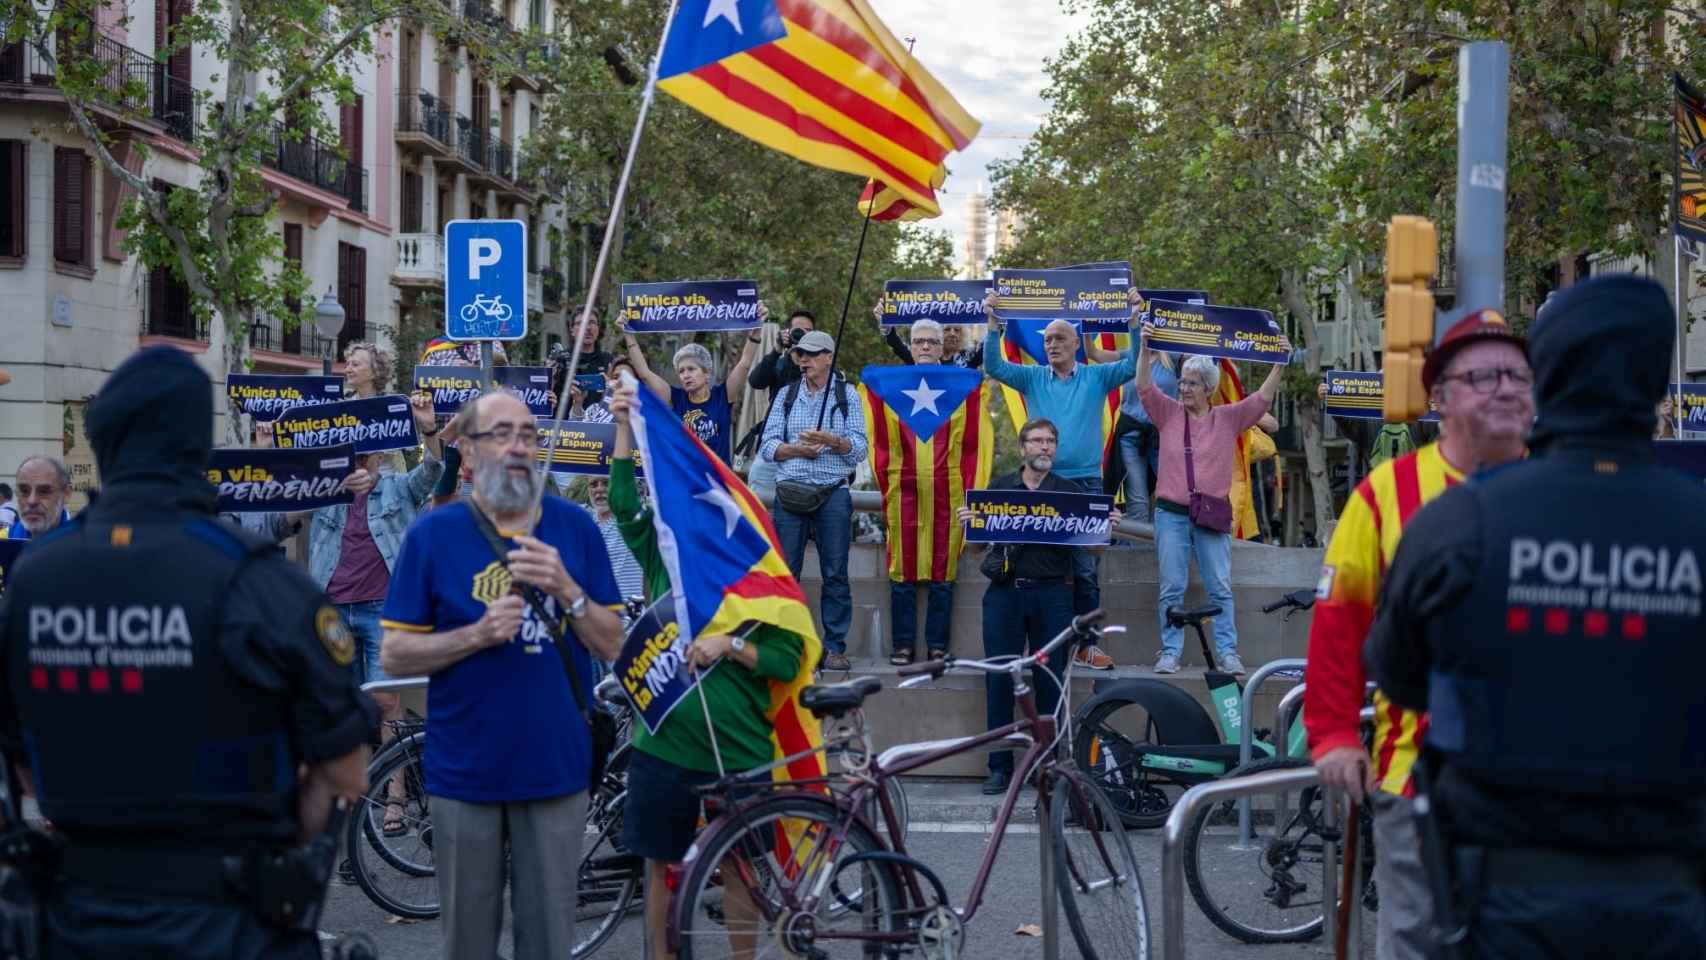 Unas 30 personas participan en la manifestación de la ANC frente a los ministros de transportes de la UE en Barcelona